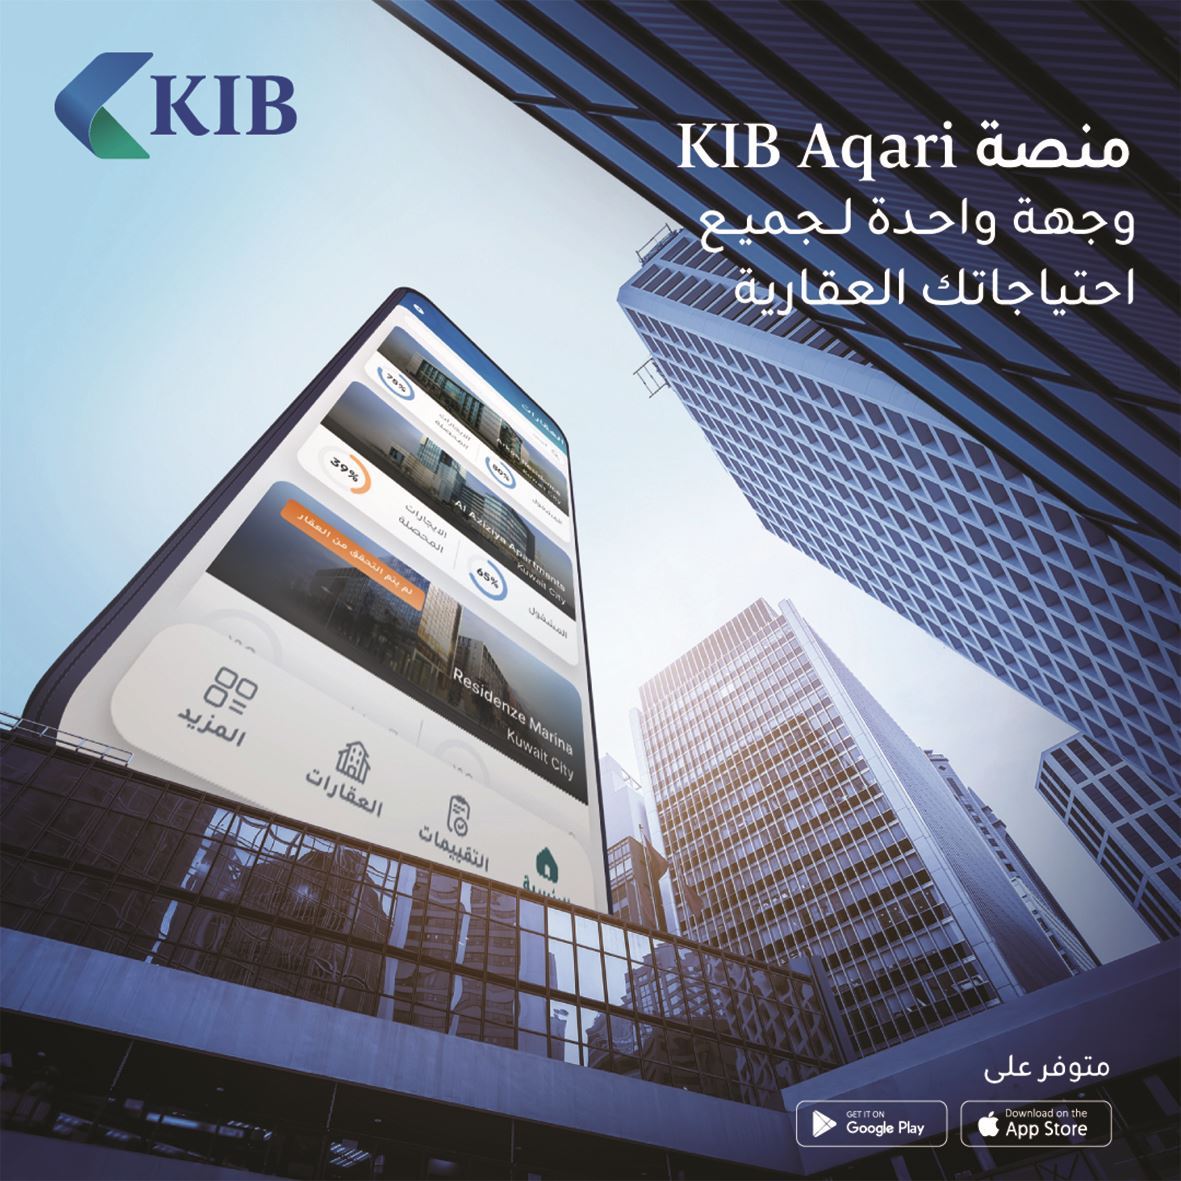 KIB launches "KIB Aqari" with distinct features